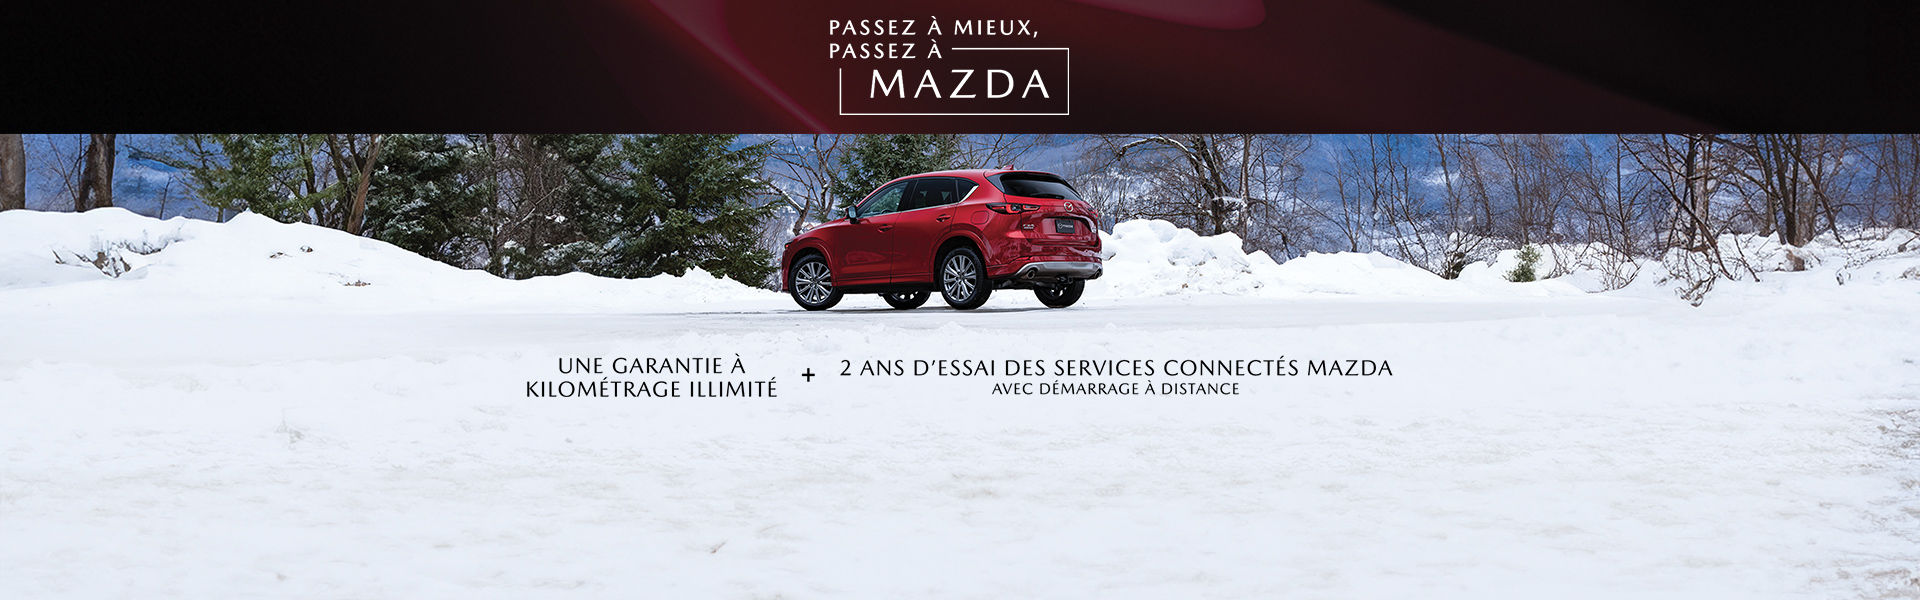 Événement Mazda - CX-5